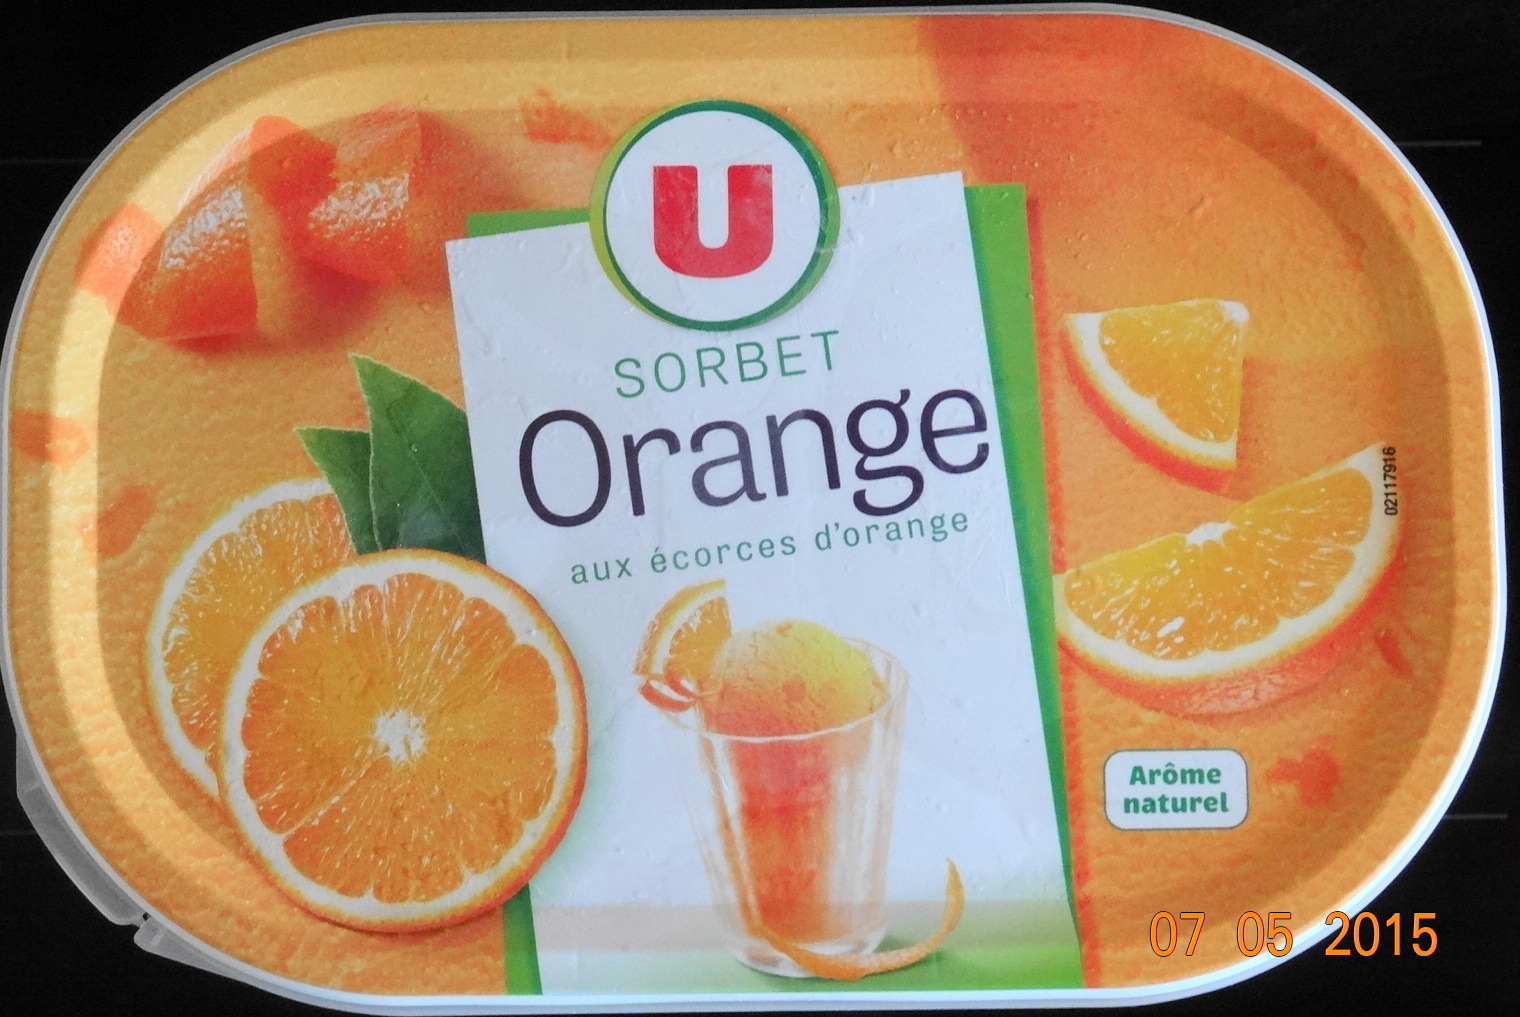 Sorbet Orange, aux écorces orange - Product - fr